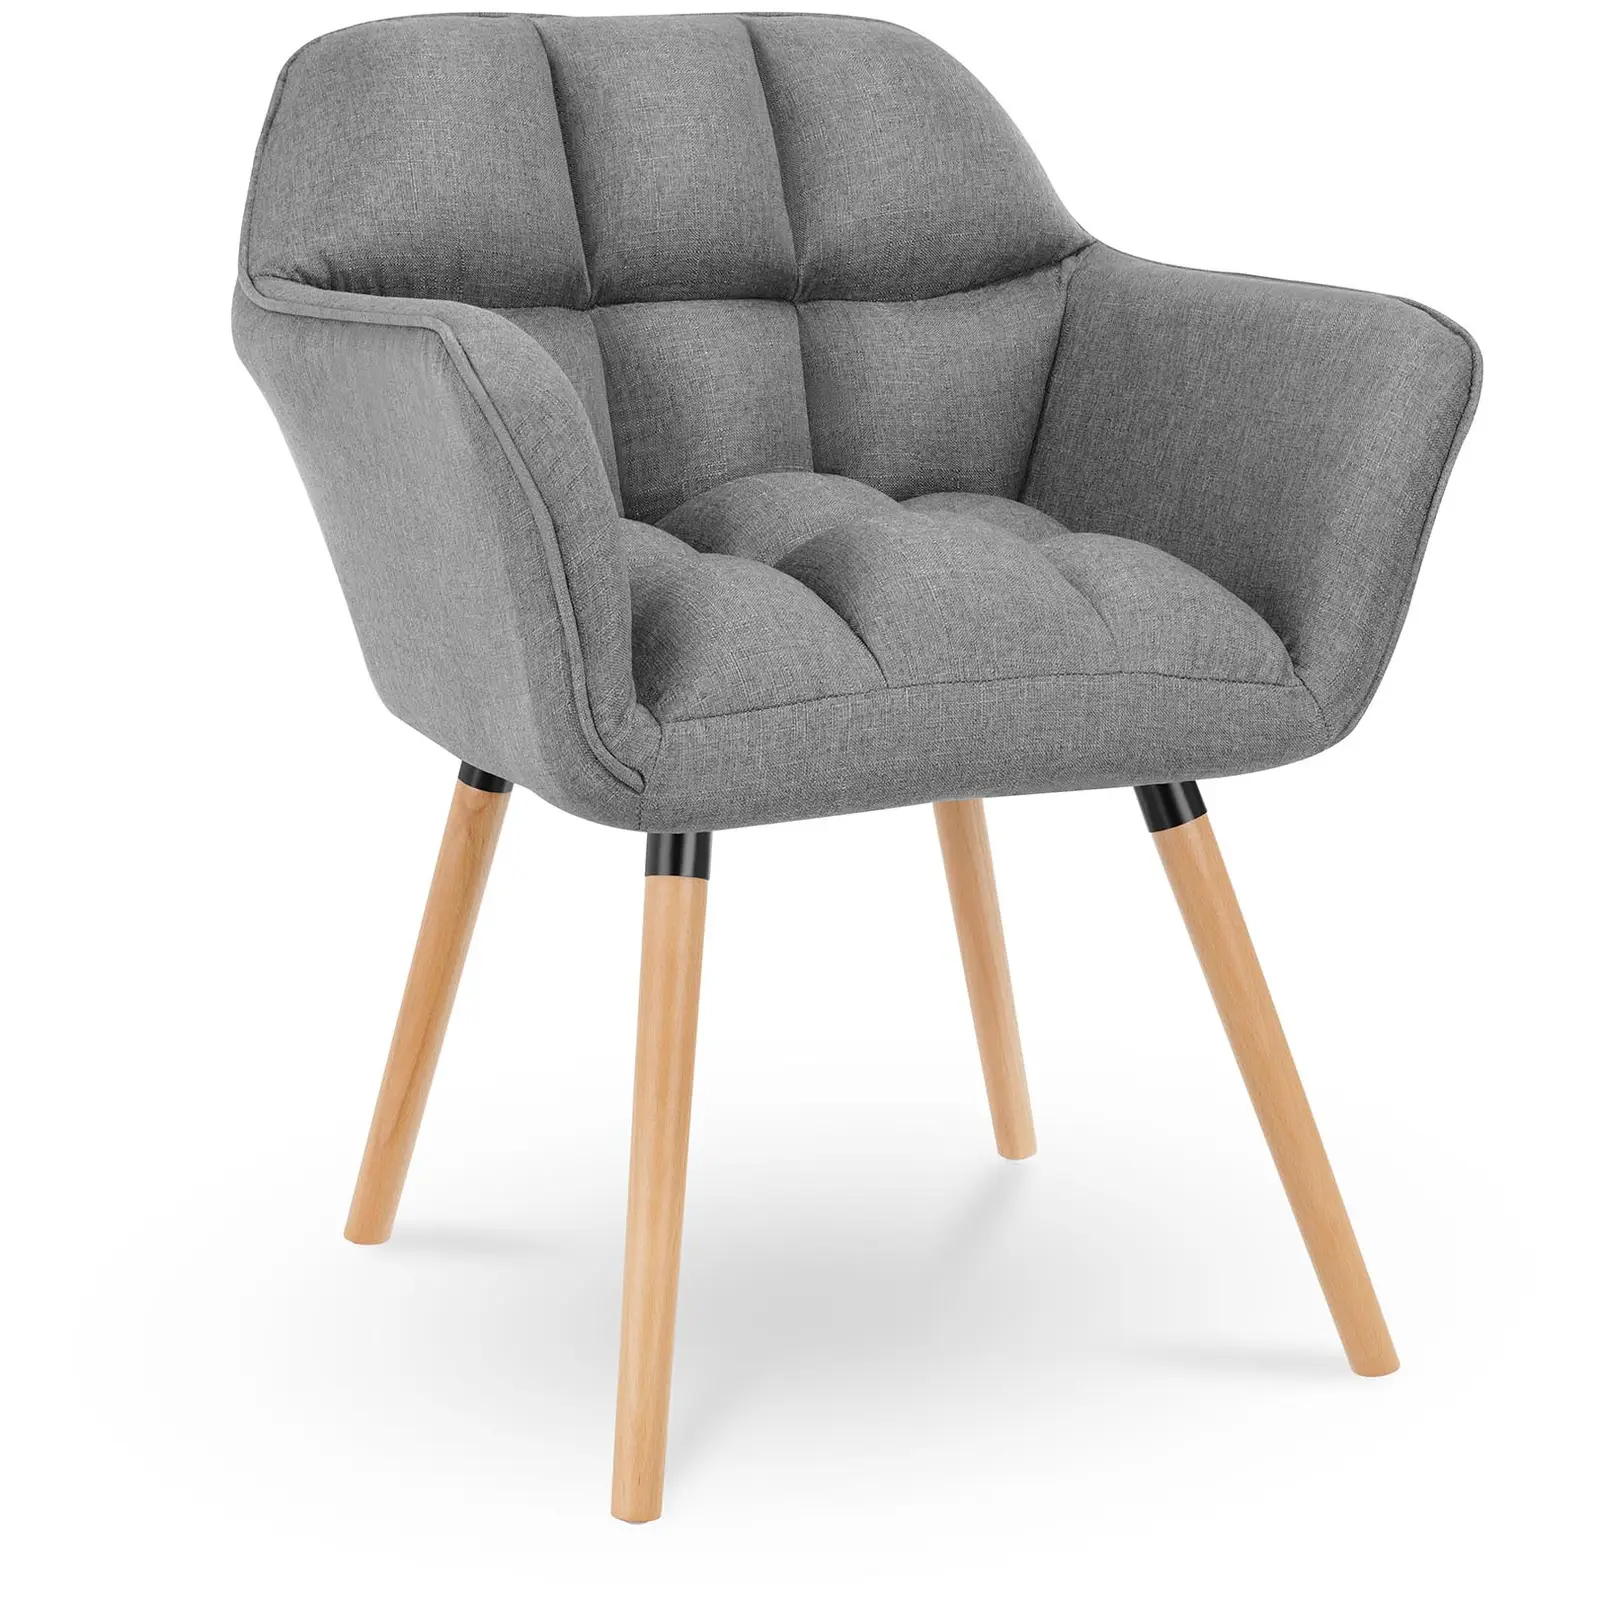 Čalouněná židle do 150 kg sedací plocha 40 x 38,5 cm tmavě šedá - Čalouněné židle Fromm & Starck